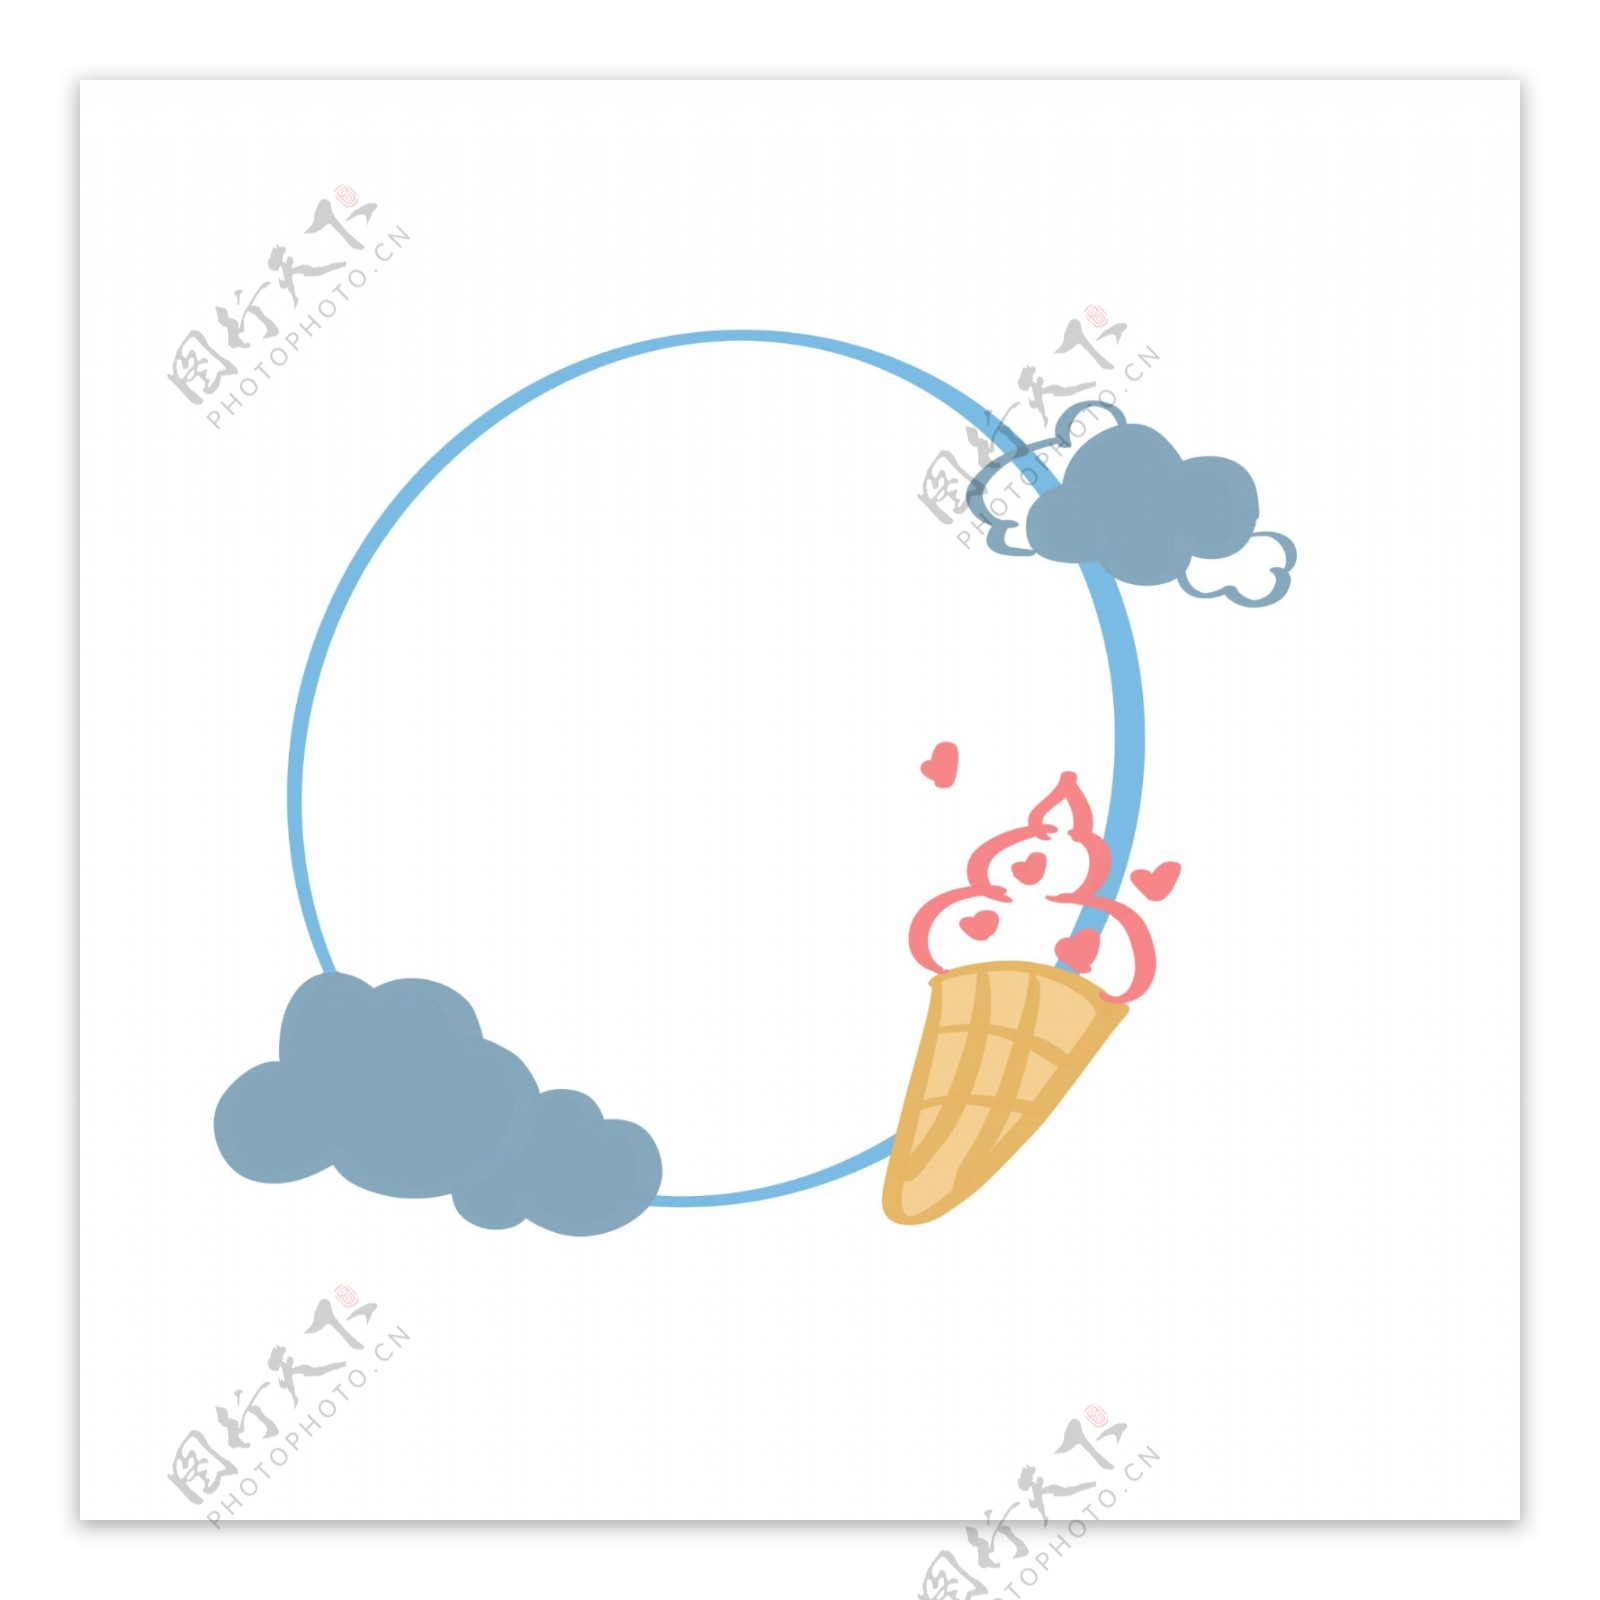 简单对话框蓝色云朵冰淇淋